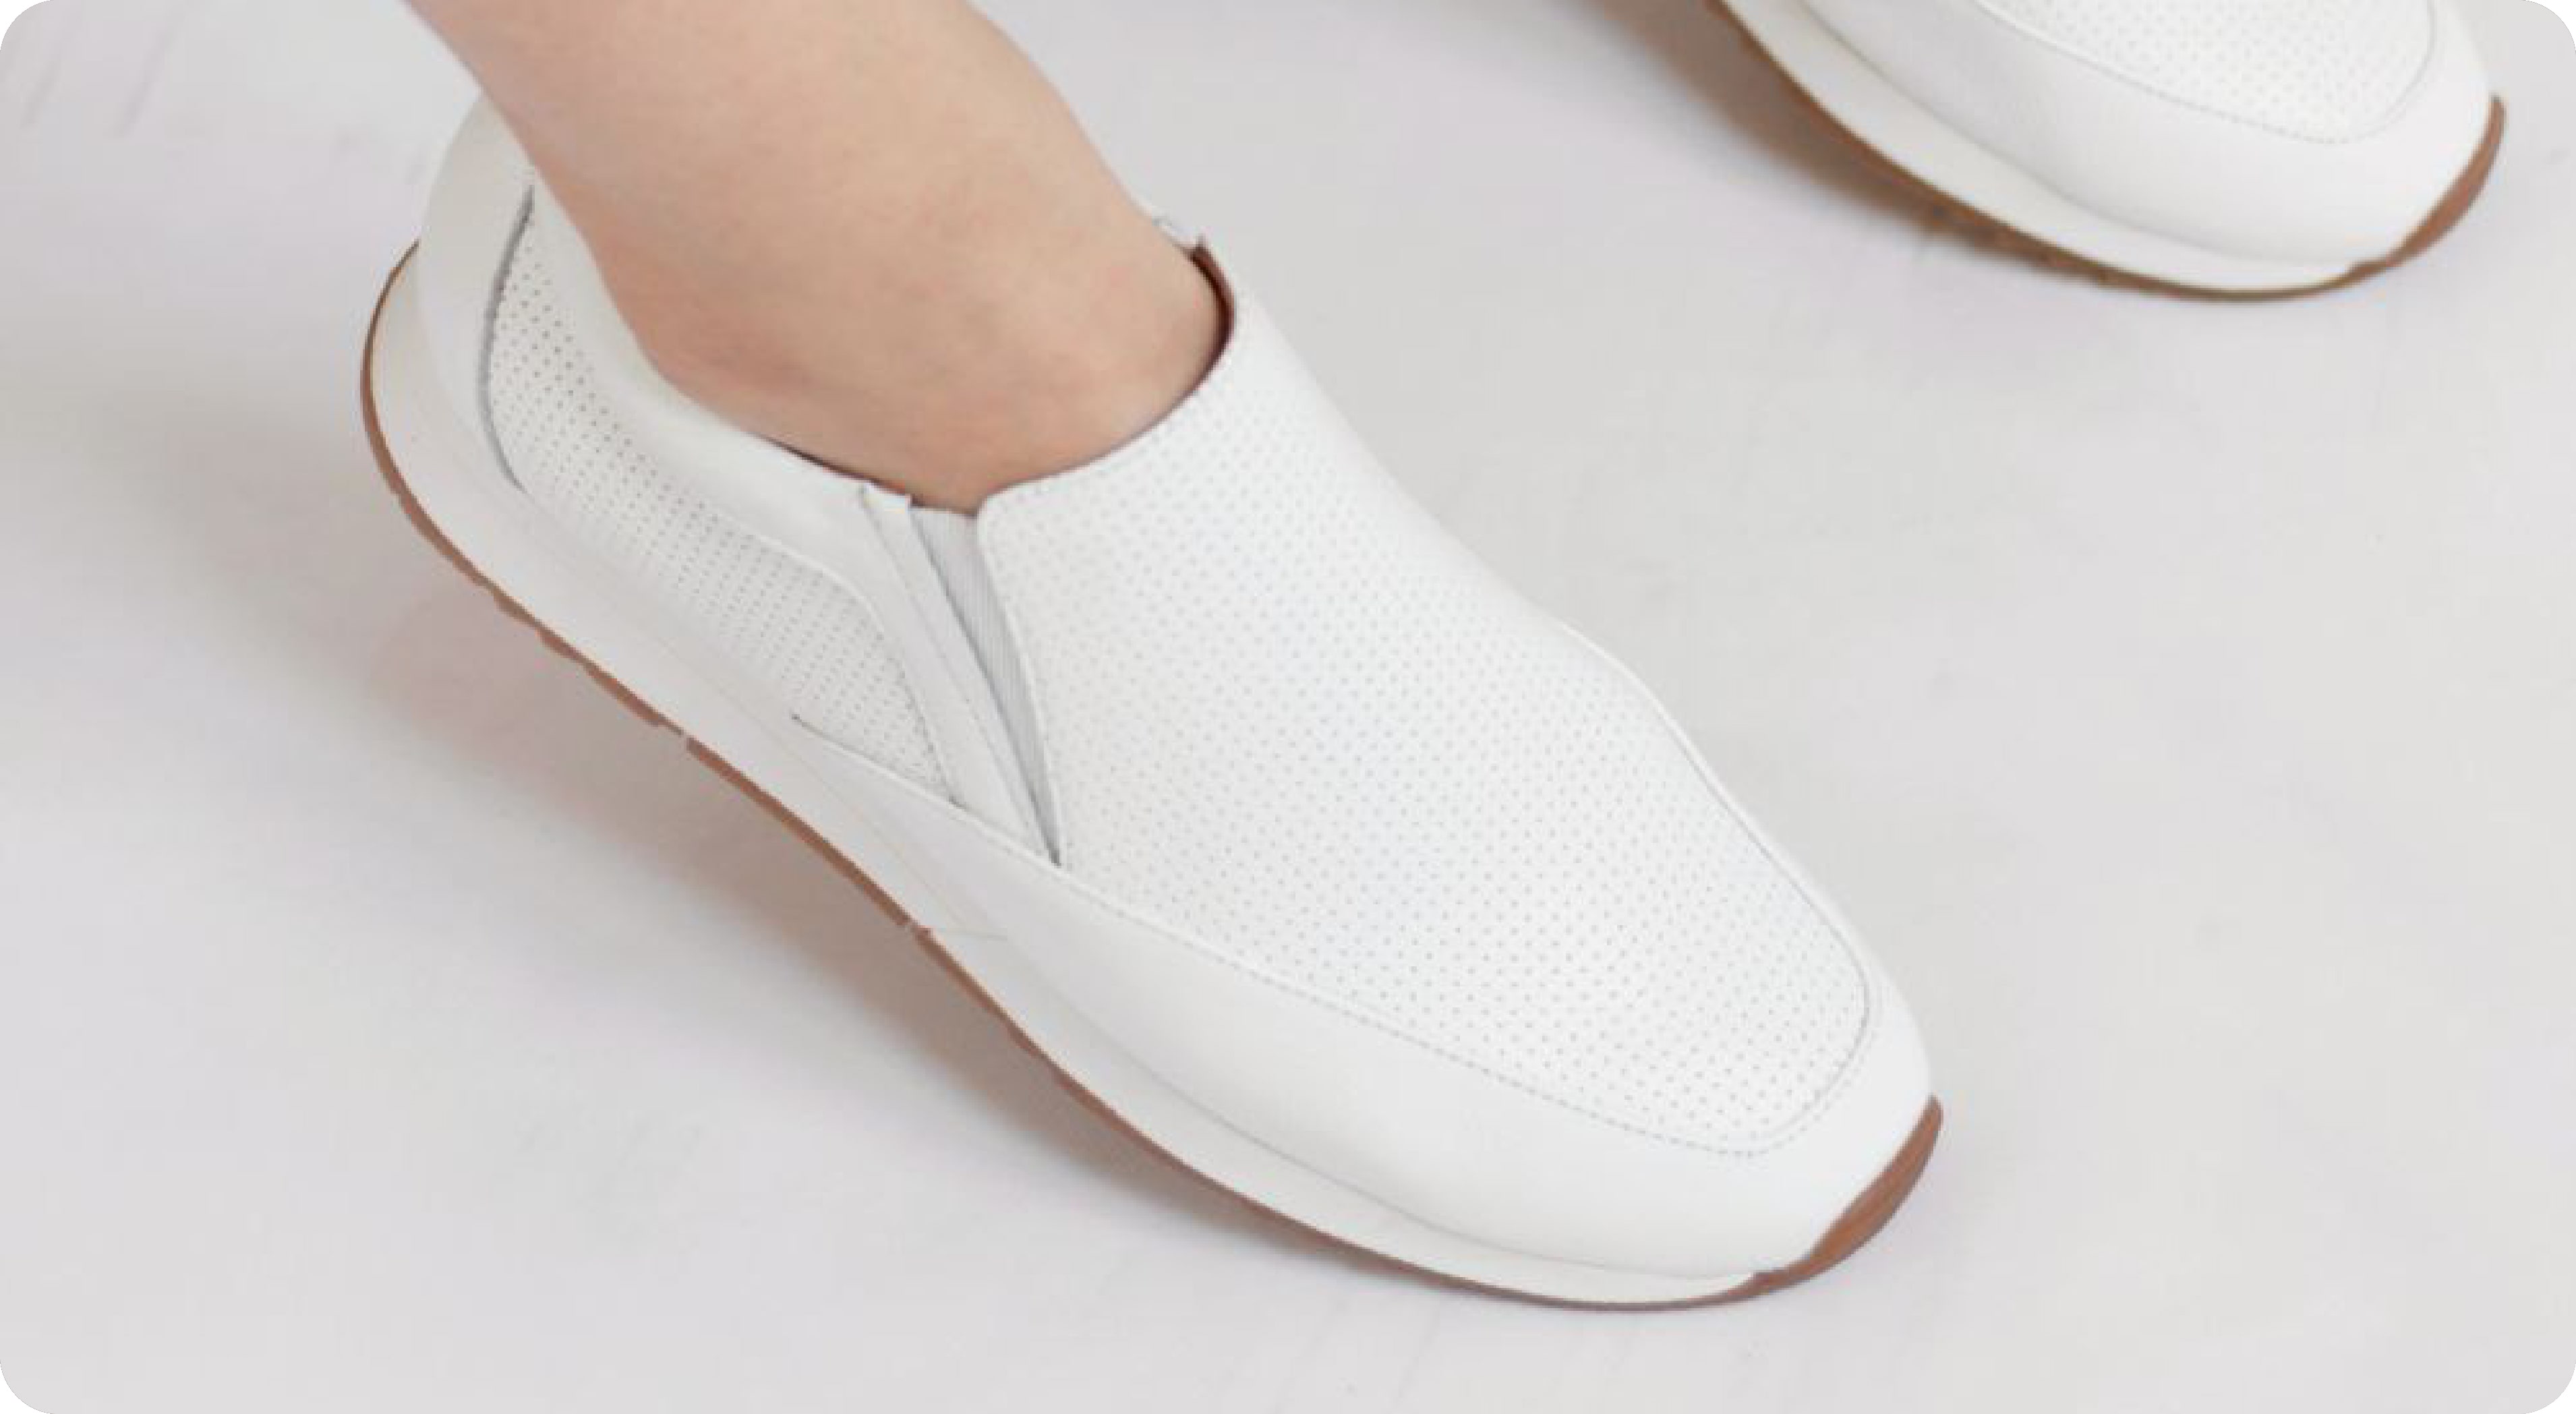 تمیزکردن کفش سفید + محصولات تمیز کردن کفش سفید چرم